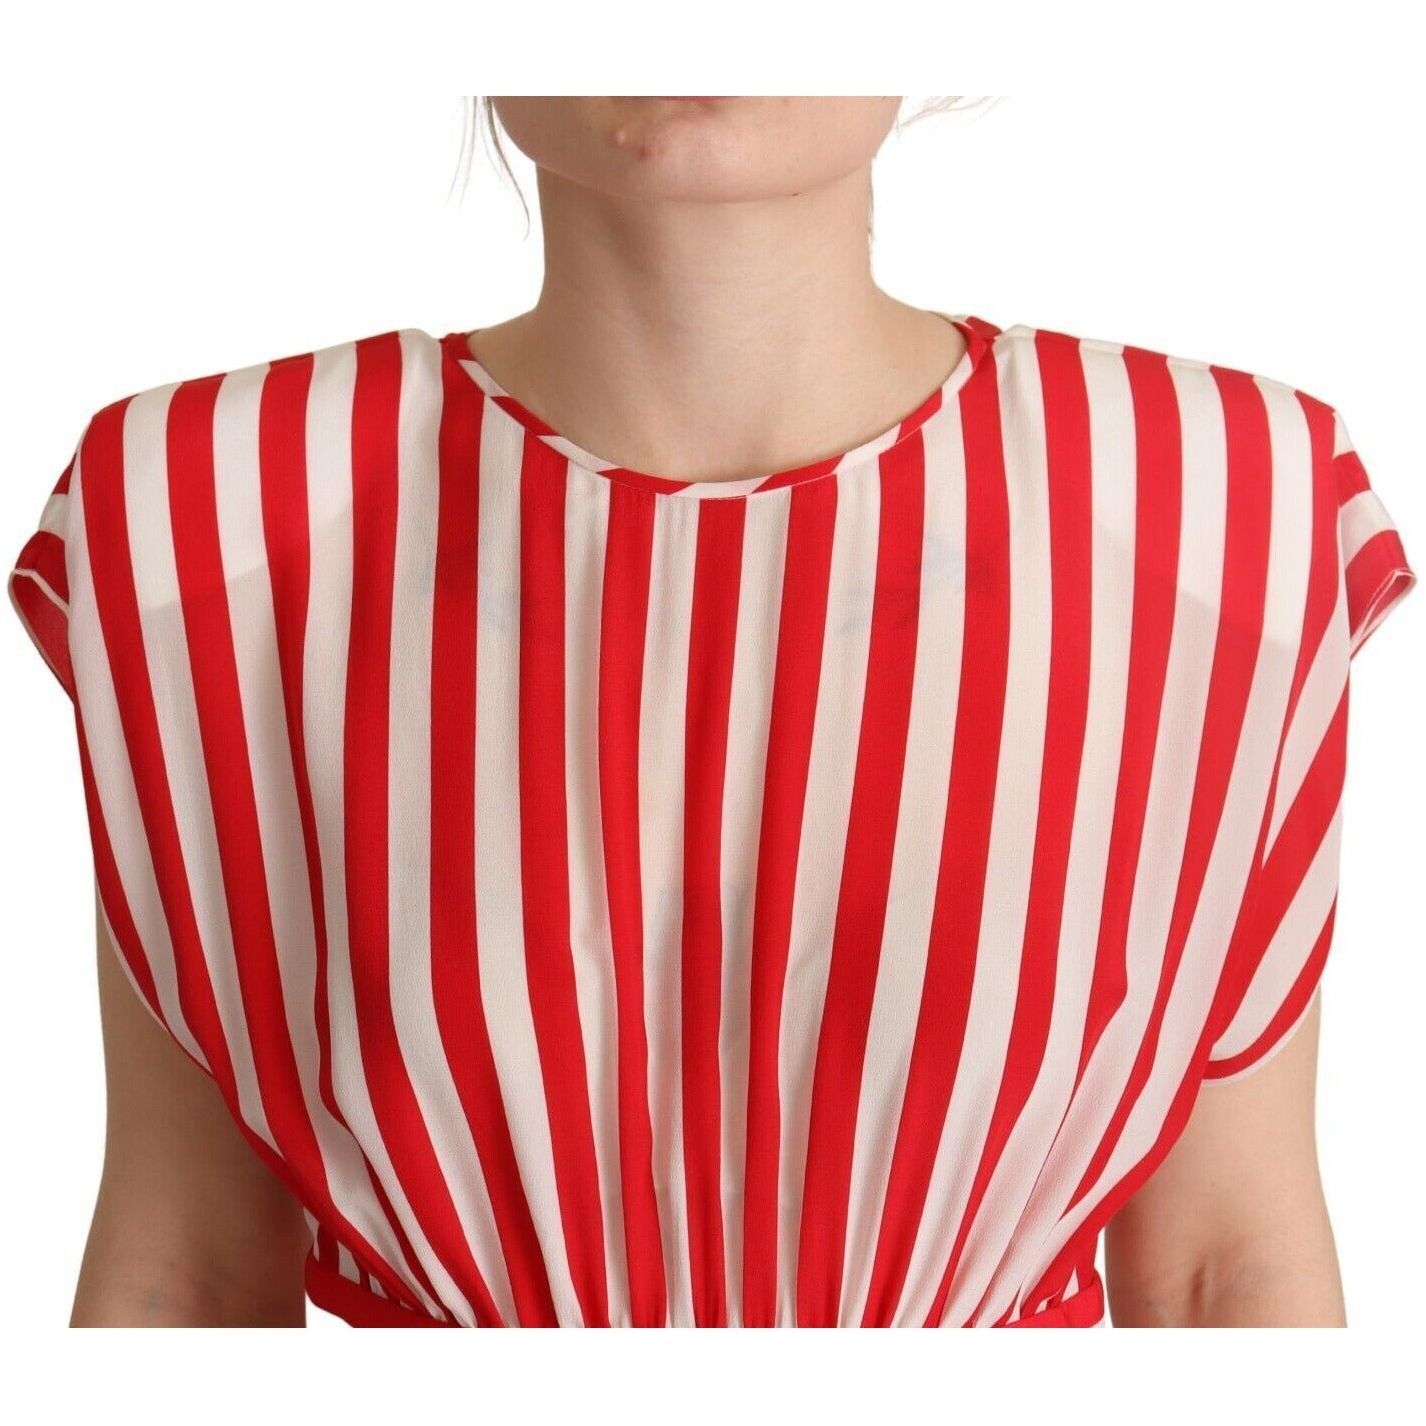 Dolce & Gabbana Elegant Striped Silk A-Line Mini Dress red-white-stripes-silk-mini-a-line-dress